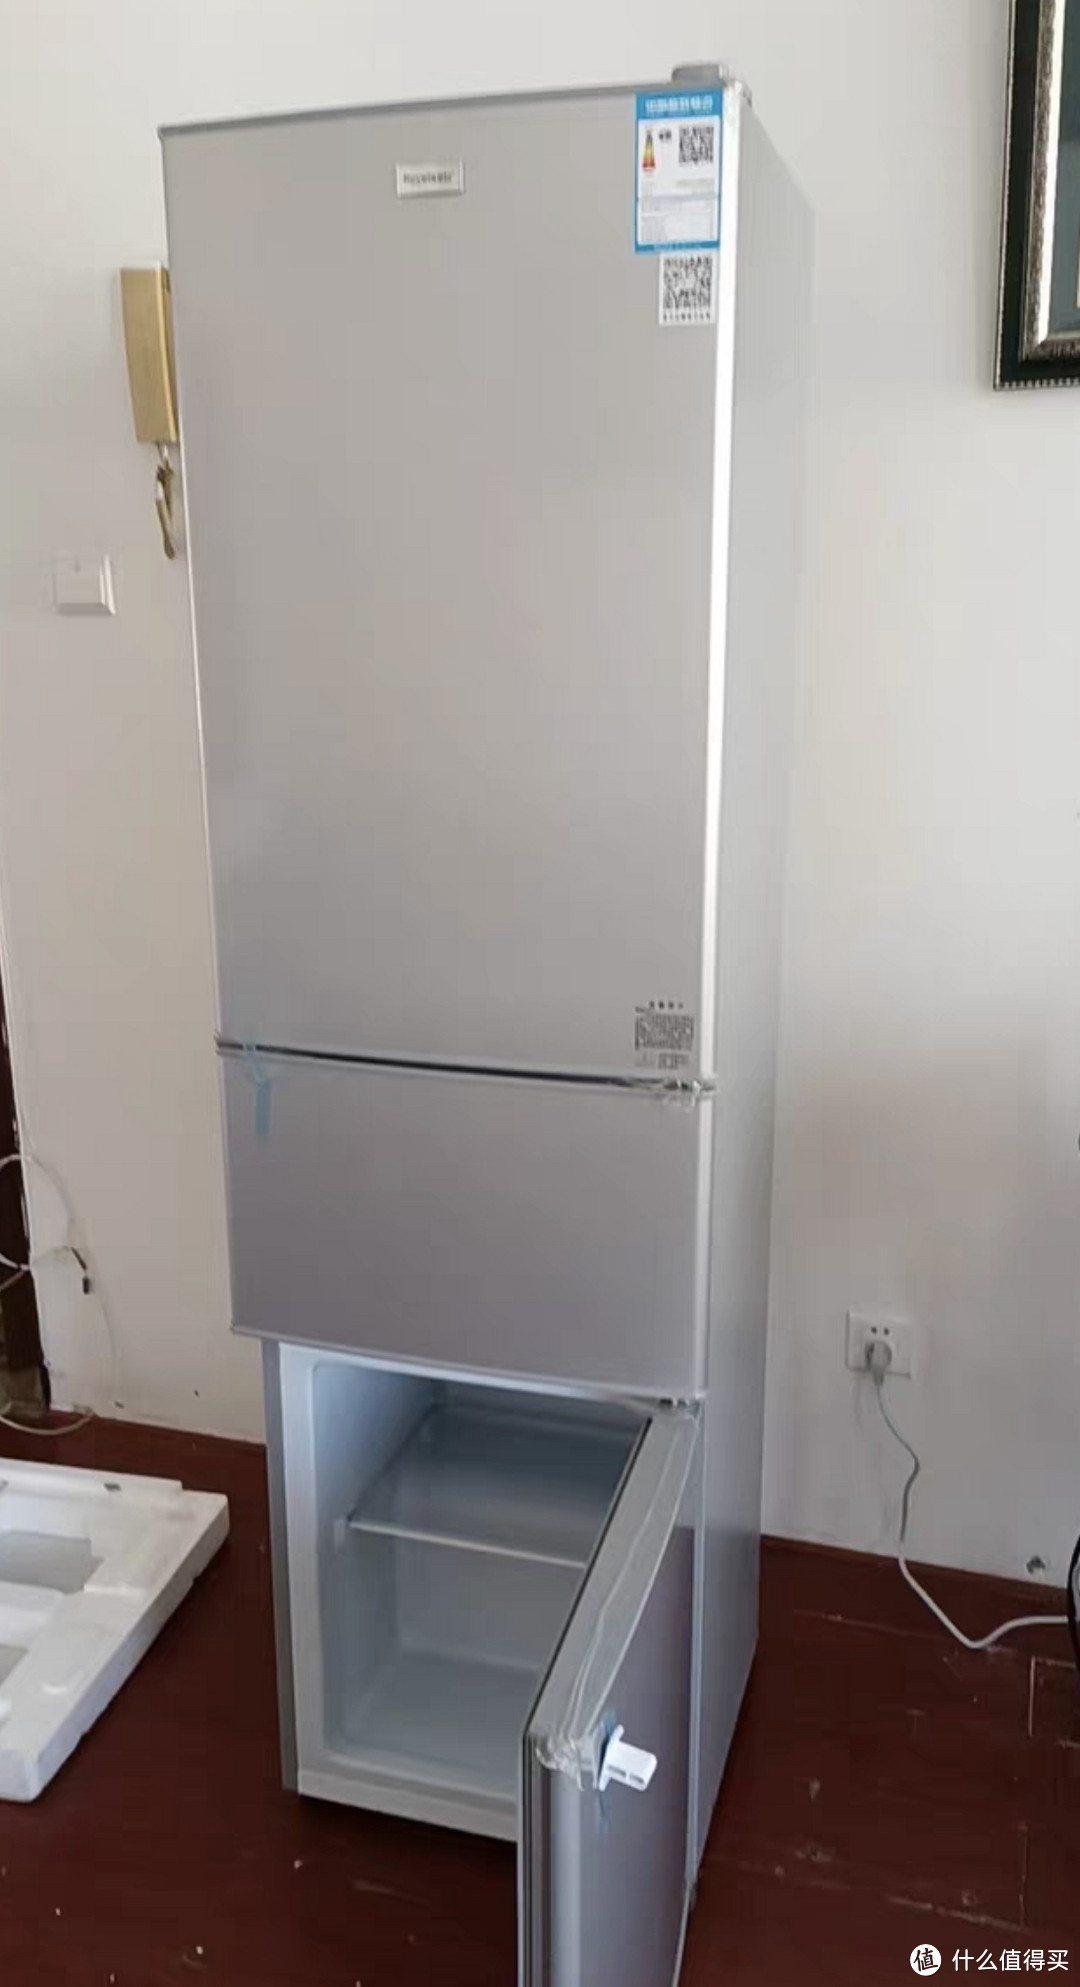 冰箱节能的有什么好处。